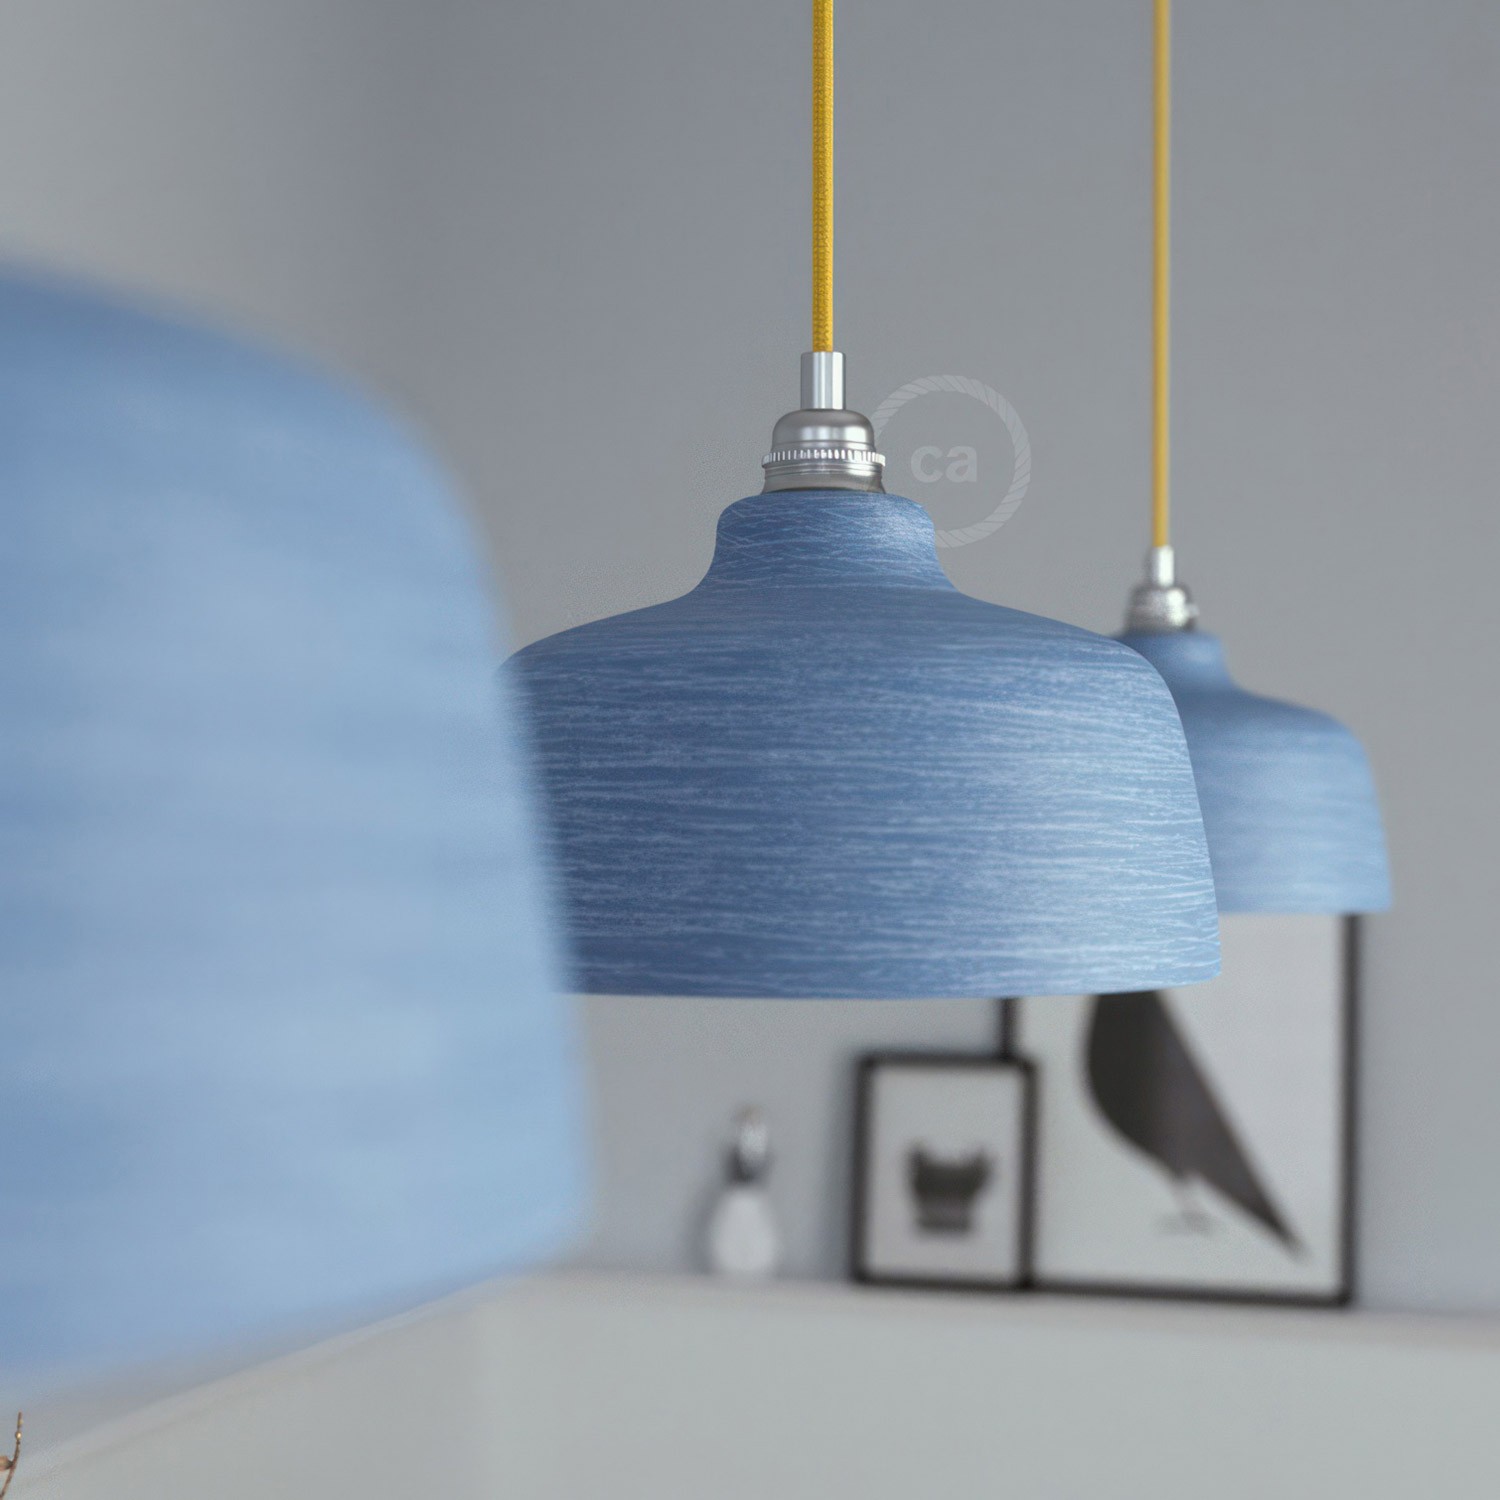 Pendelleuchte inklusive Textilkabel, tassenförmigem Lampenschirm aus Keramik und Metall-Zubehör - Made in Italy